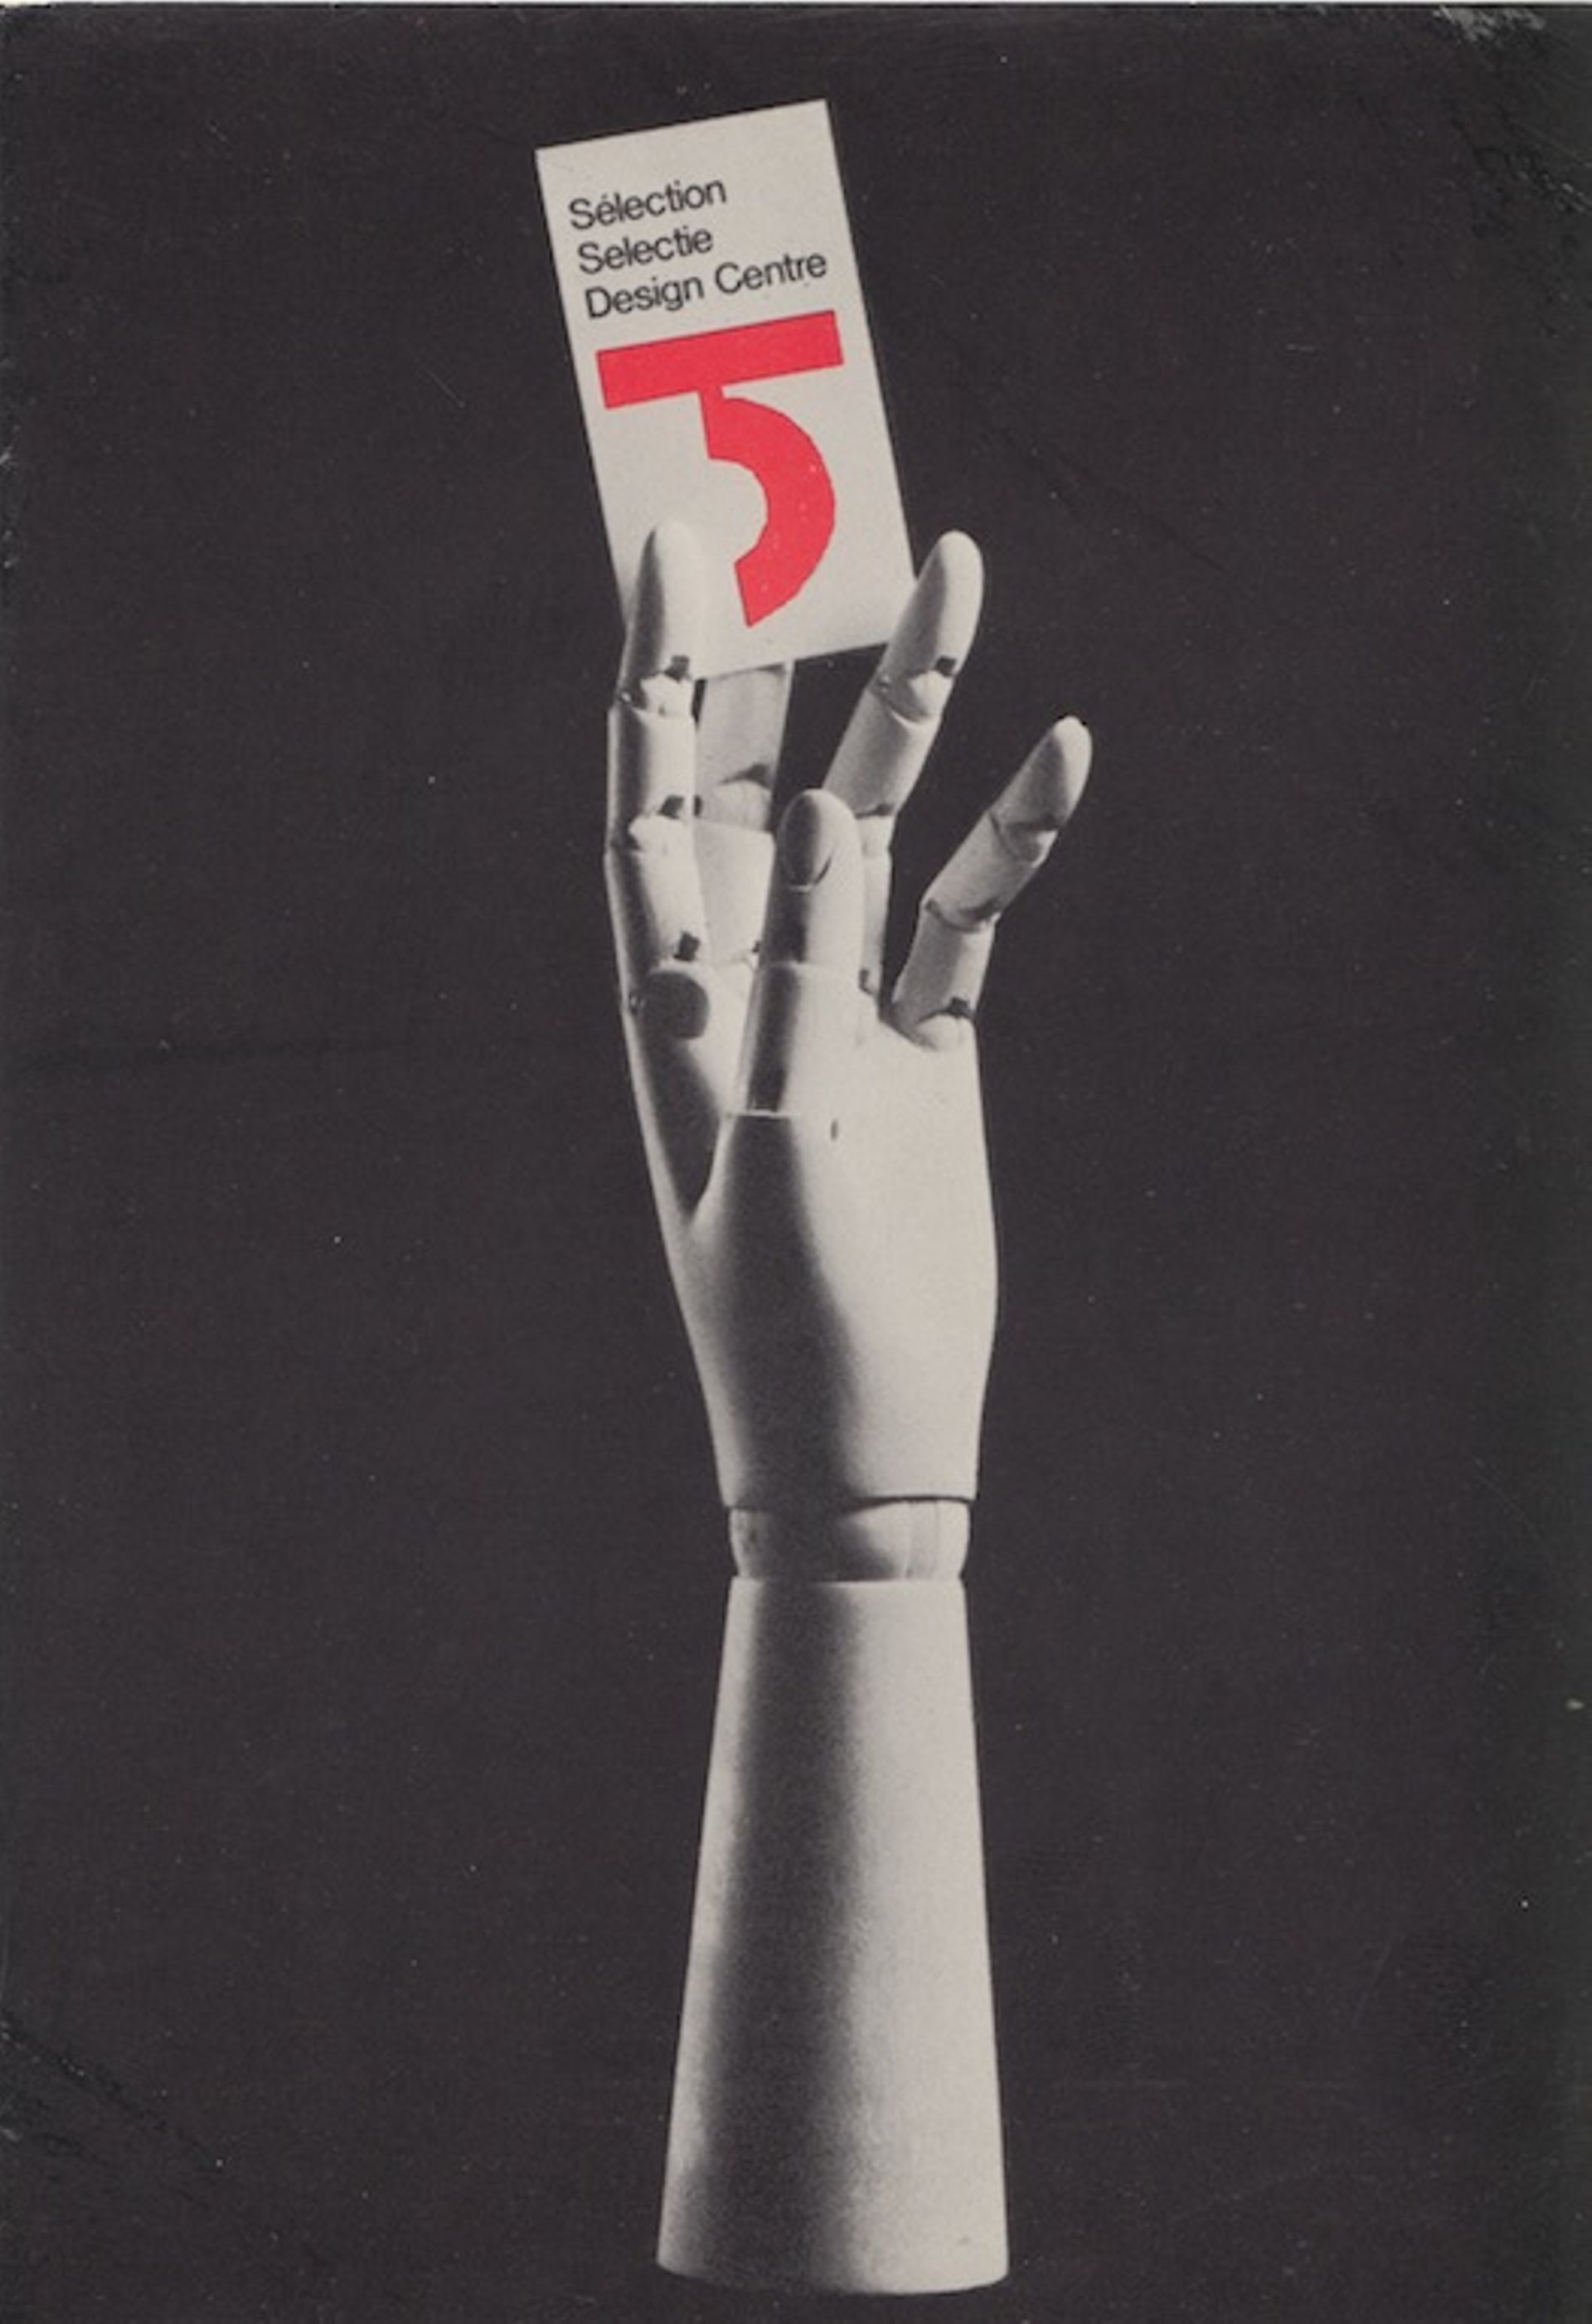 The prestigious label of the Design Centre designed by Michel Olyff (1927)